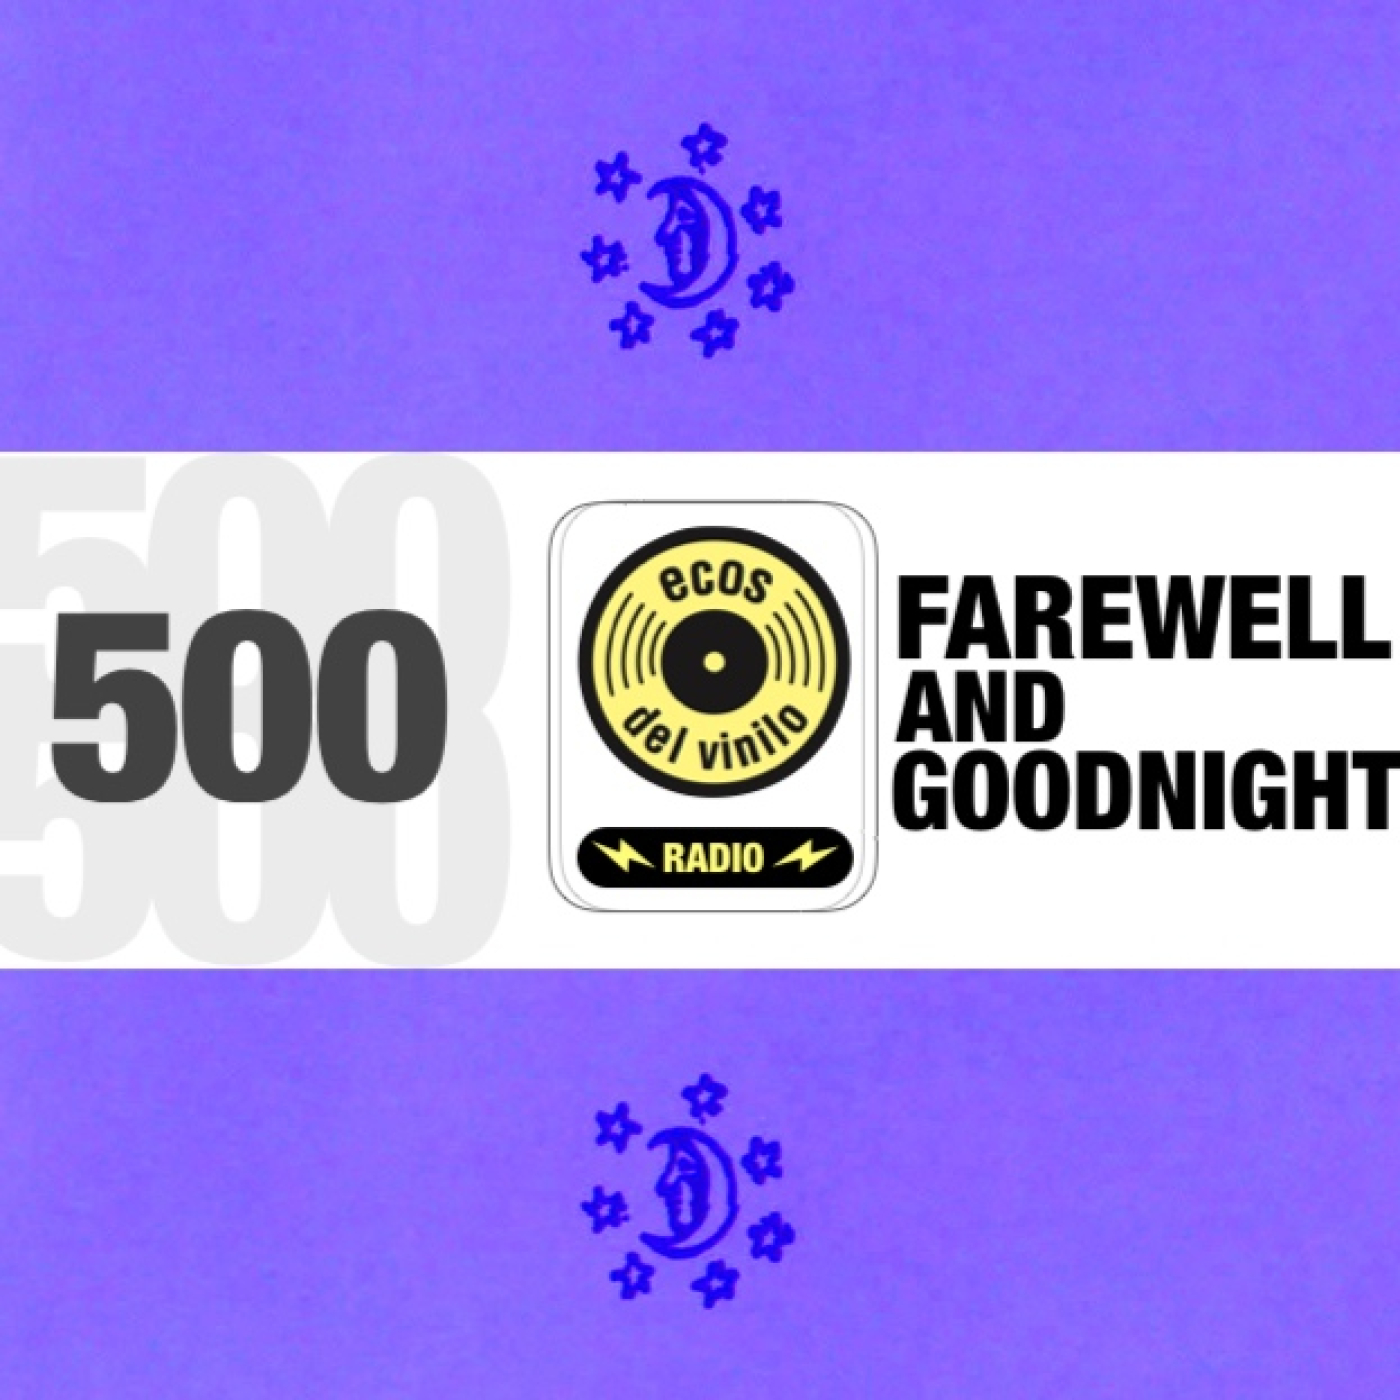 Farewell and goodnight | Programa 500 – Ecos del Vinilo Radio